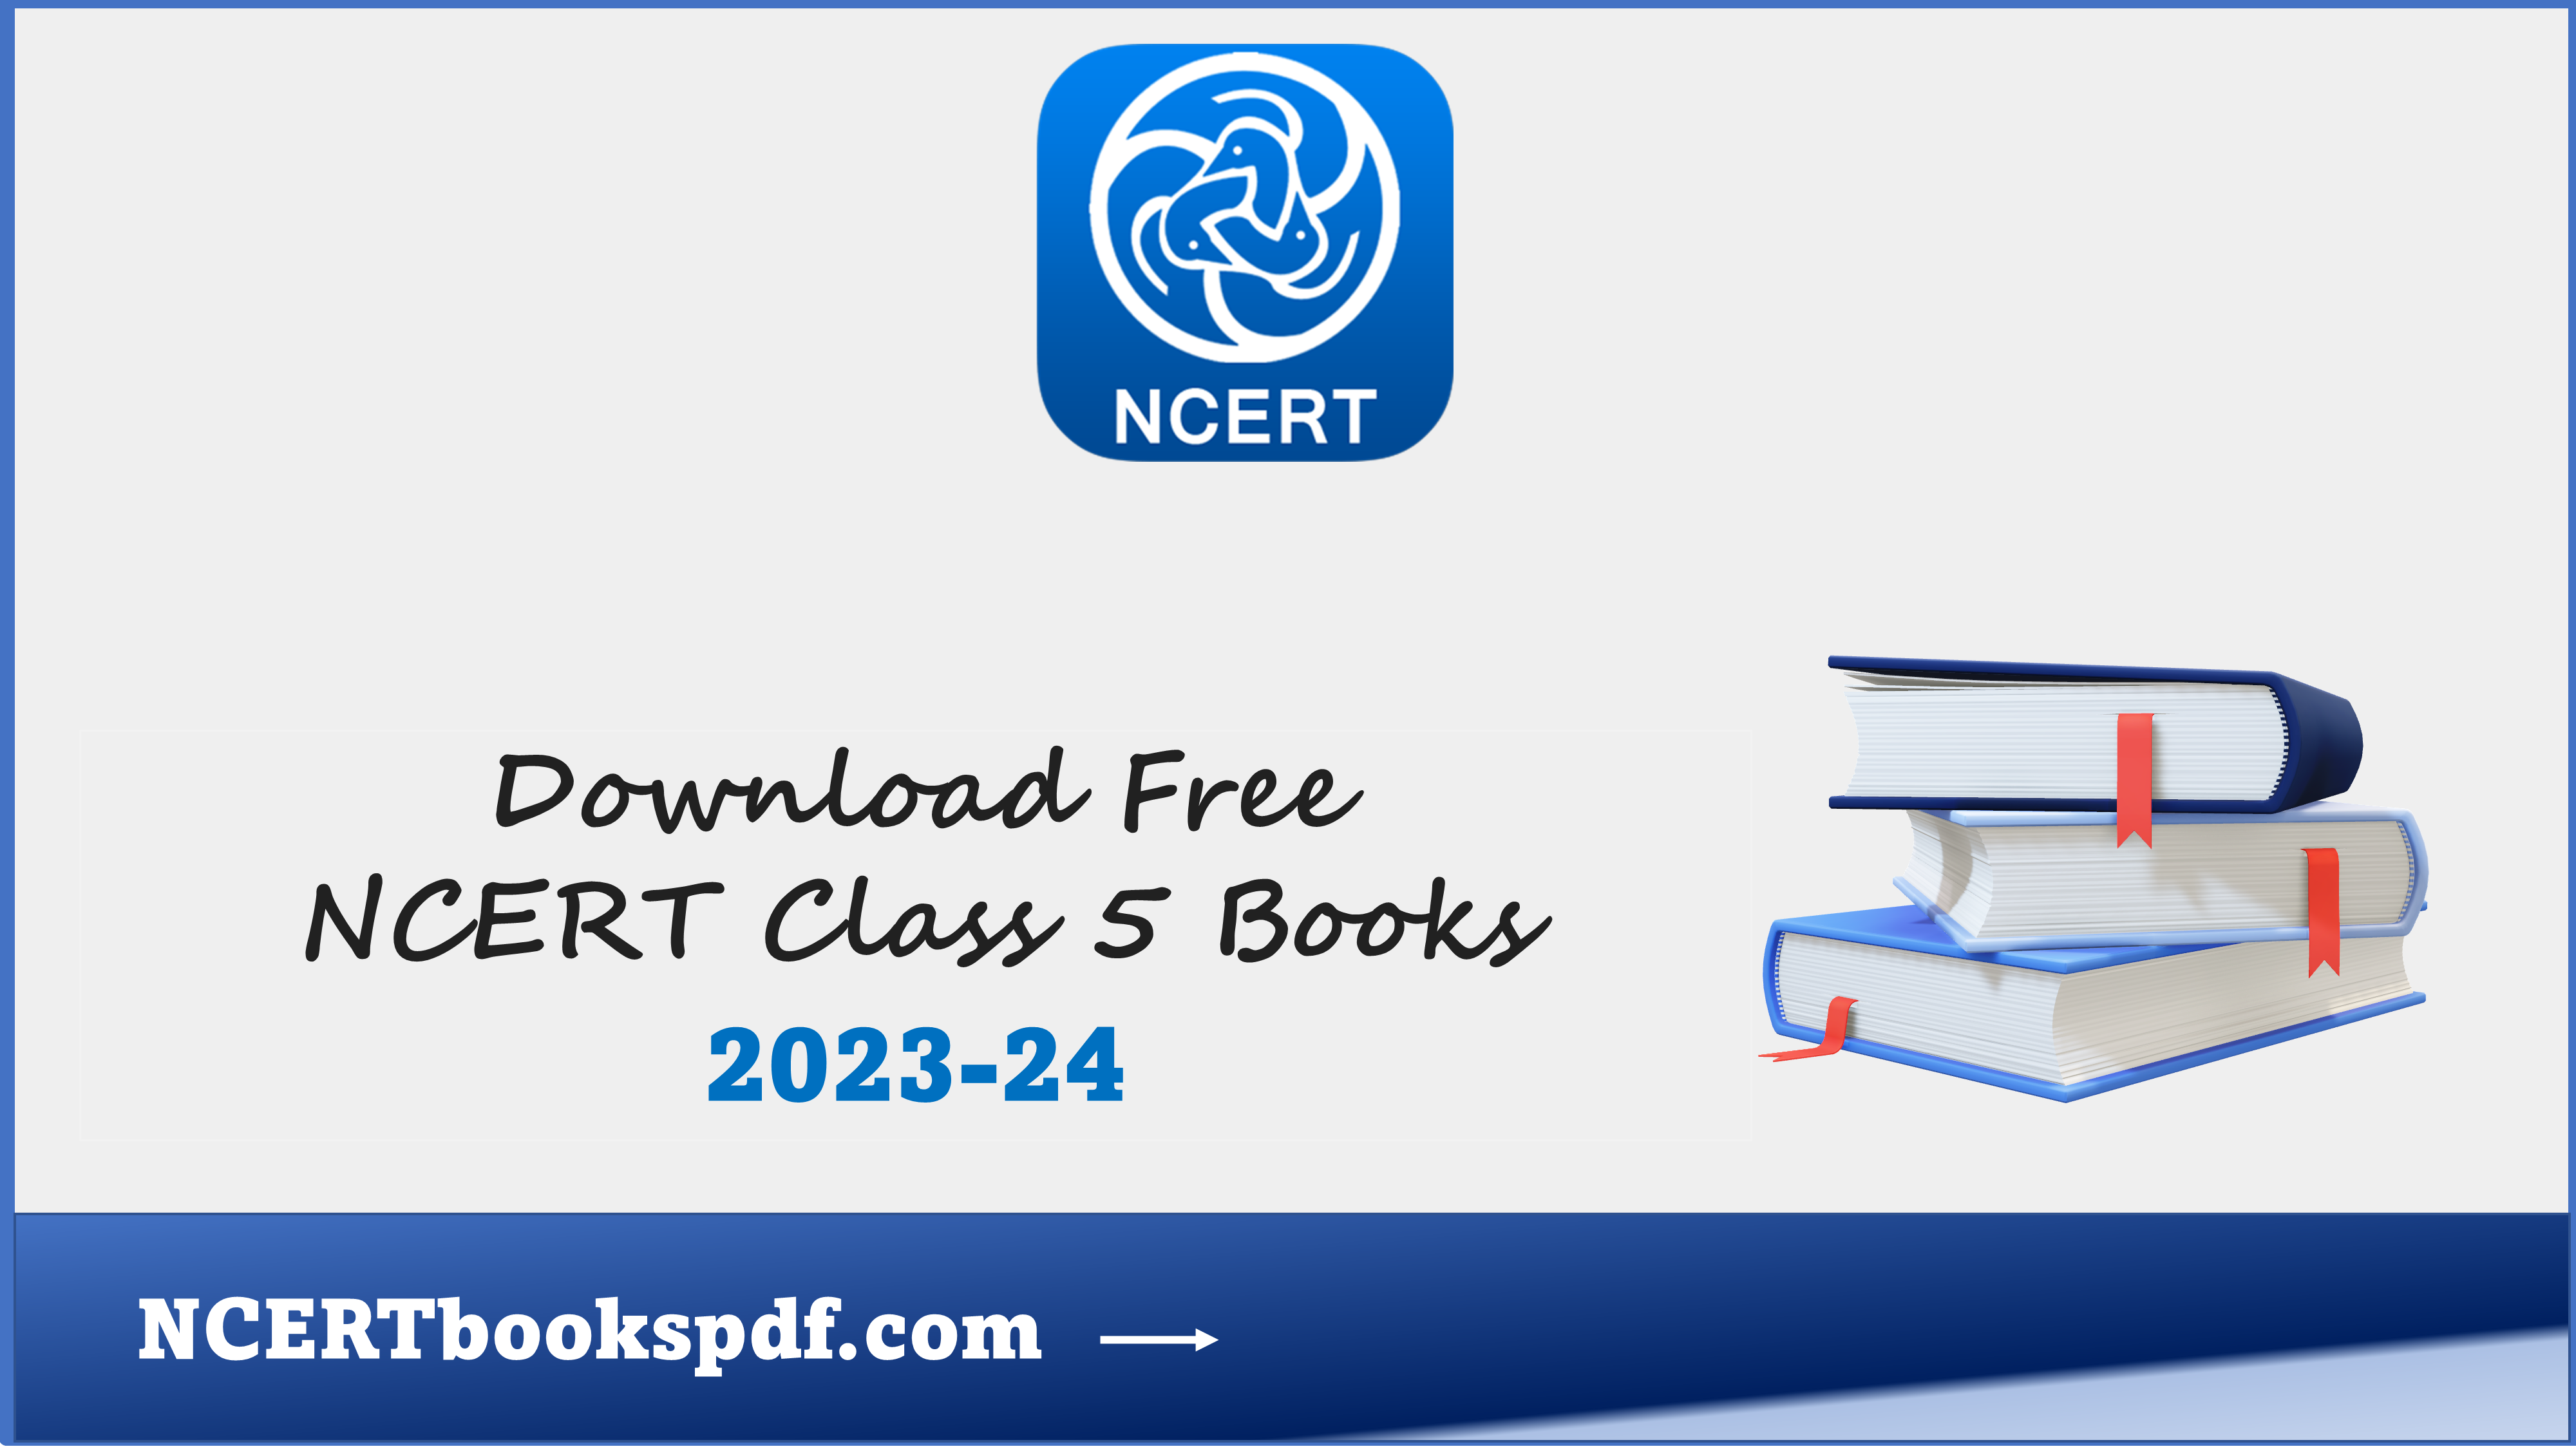 NCERT BOOKS CLASS 5